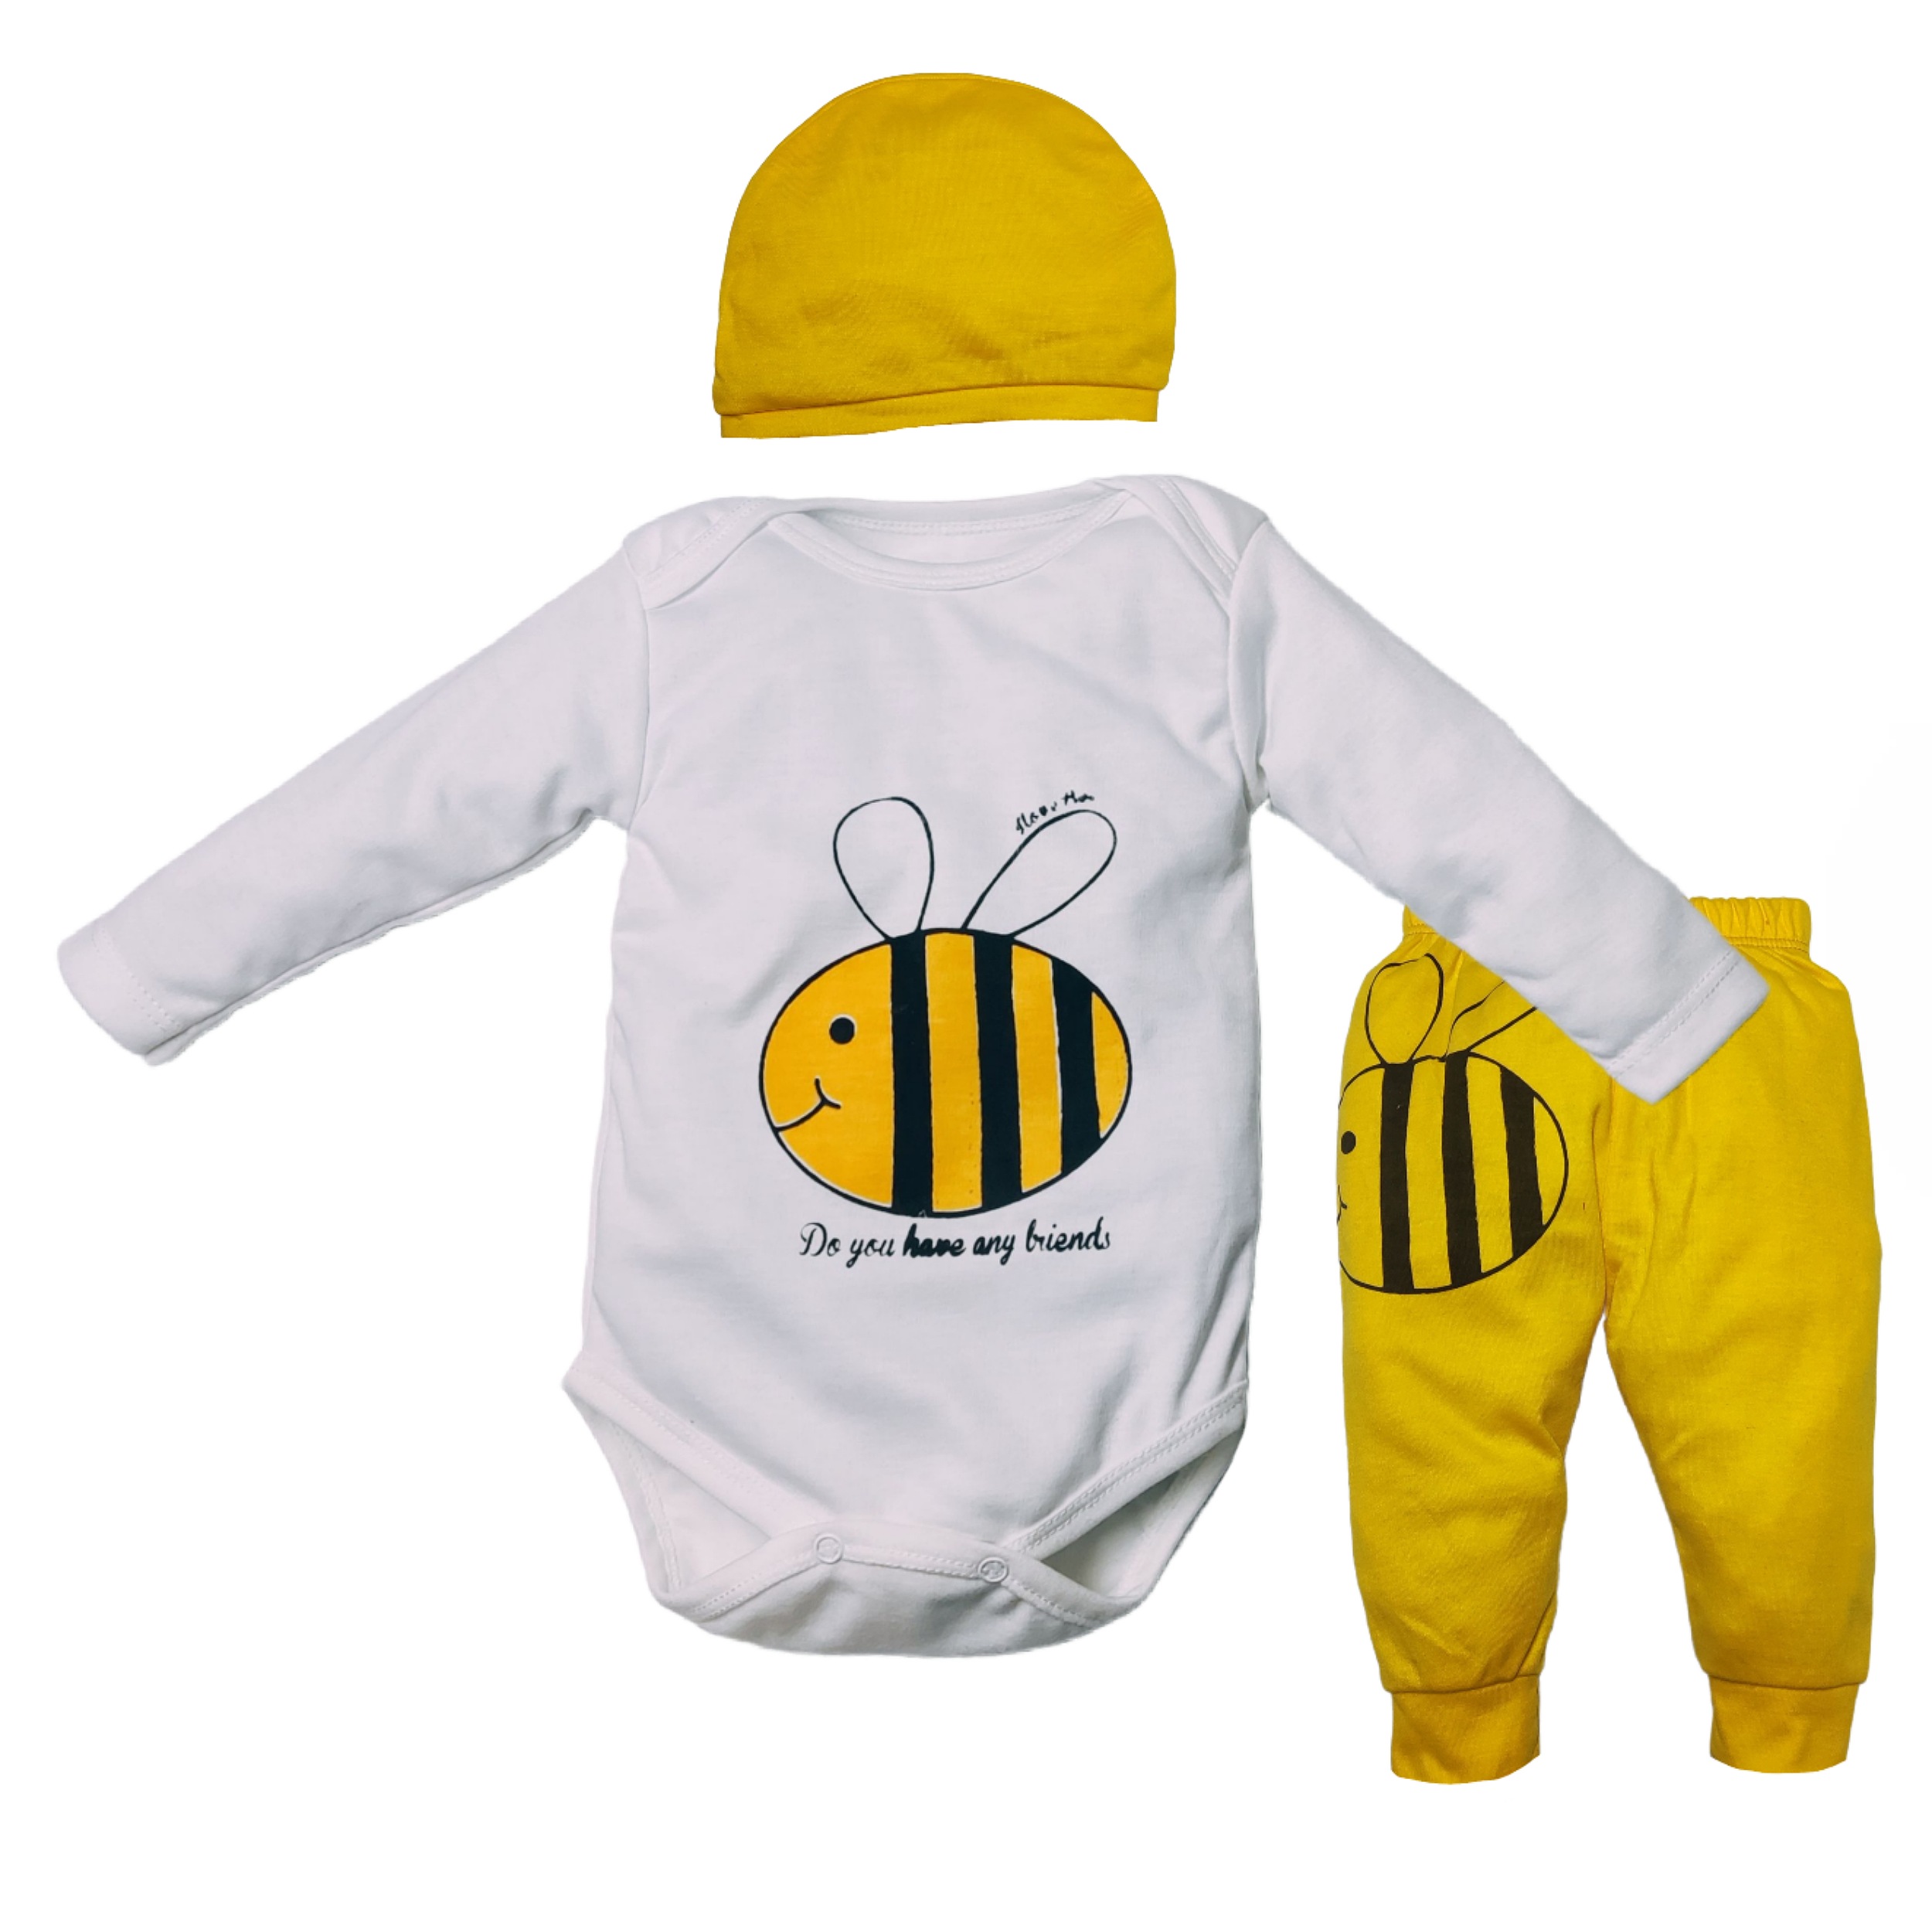 ست 3 تکه لباس نوزادی مدل زنبور کد M20